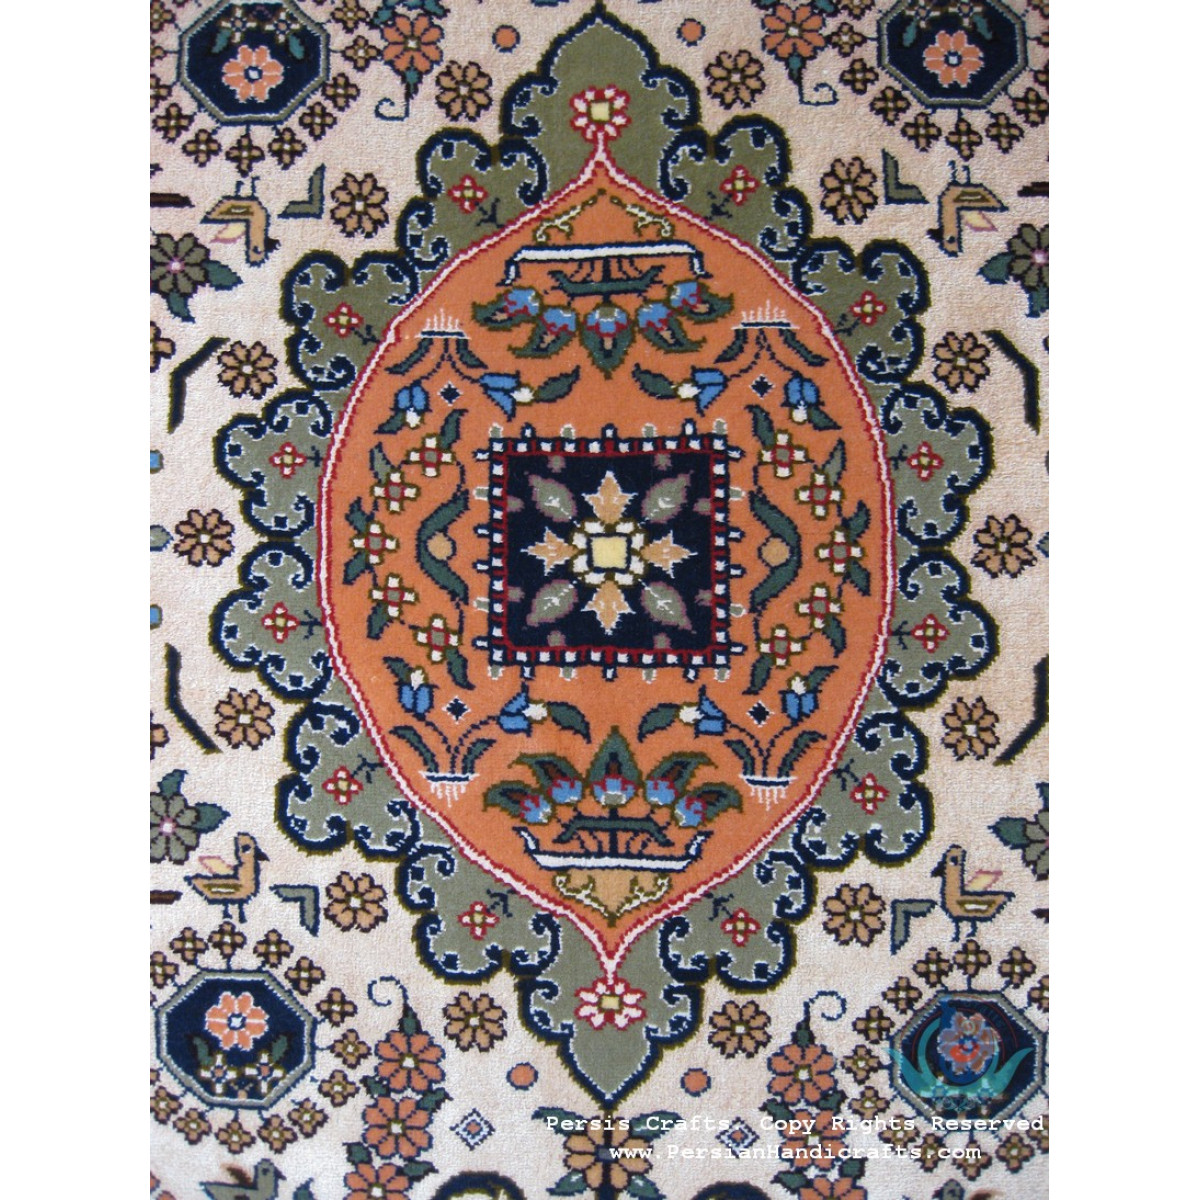 Premium Persian Geometric Design Isfahan Rug - RI4040-Persian Handicrafts